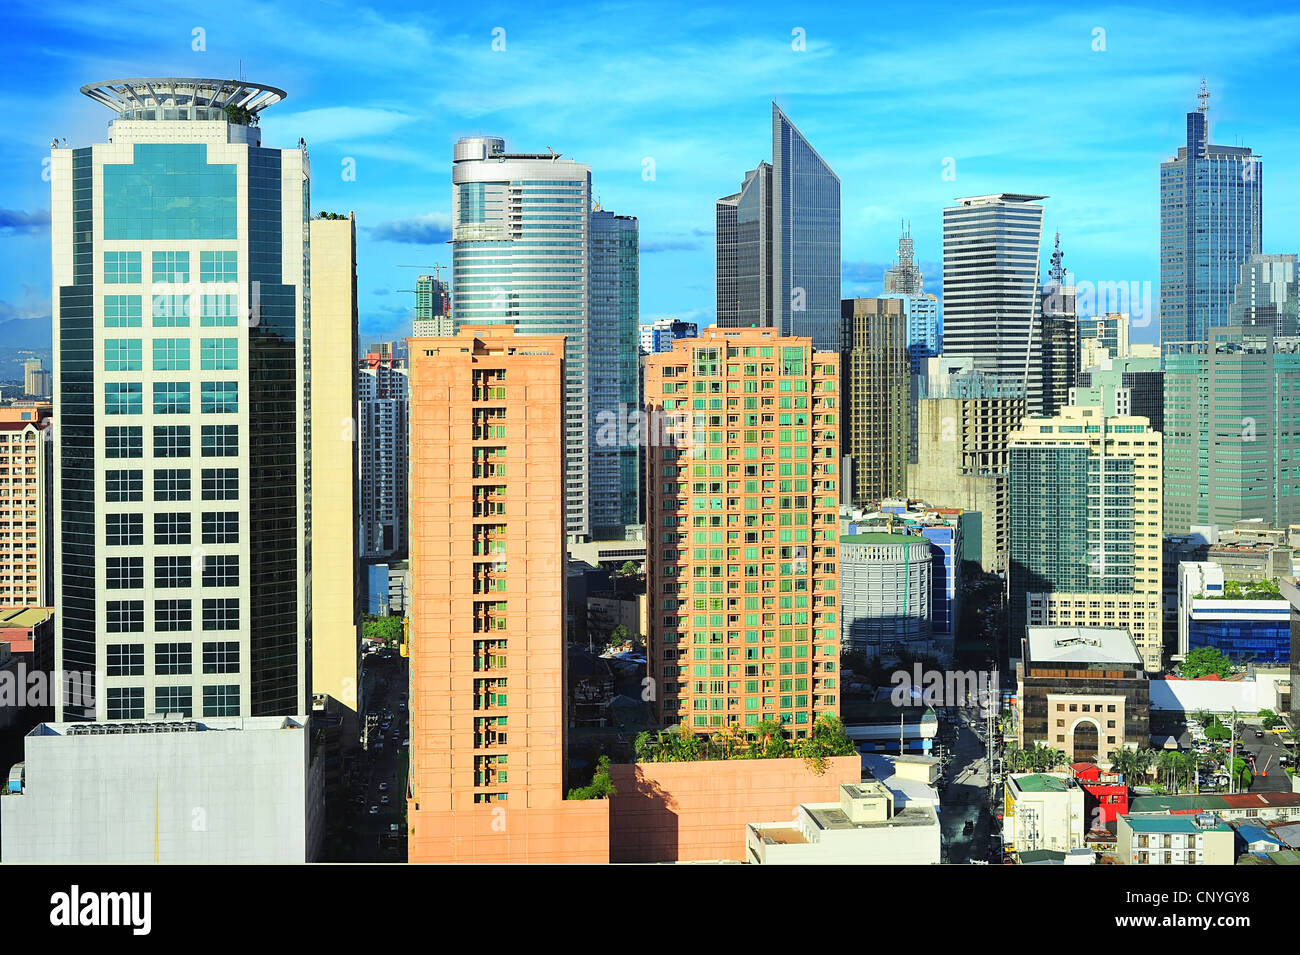 Vue aérienne sur la ville de Makati - moderne des affaires et des finances de la ville de Manille, Philippines Banque D'Images